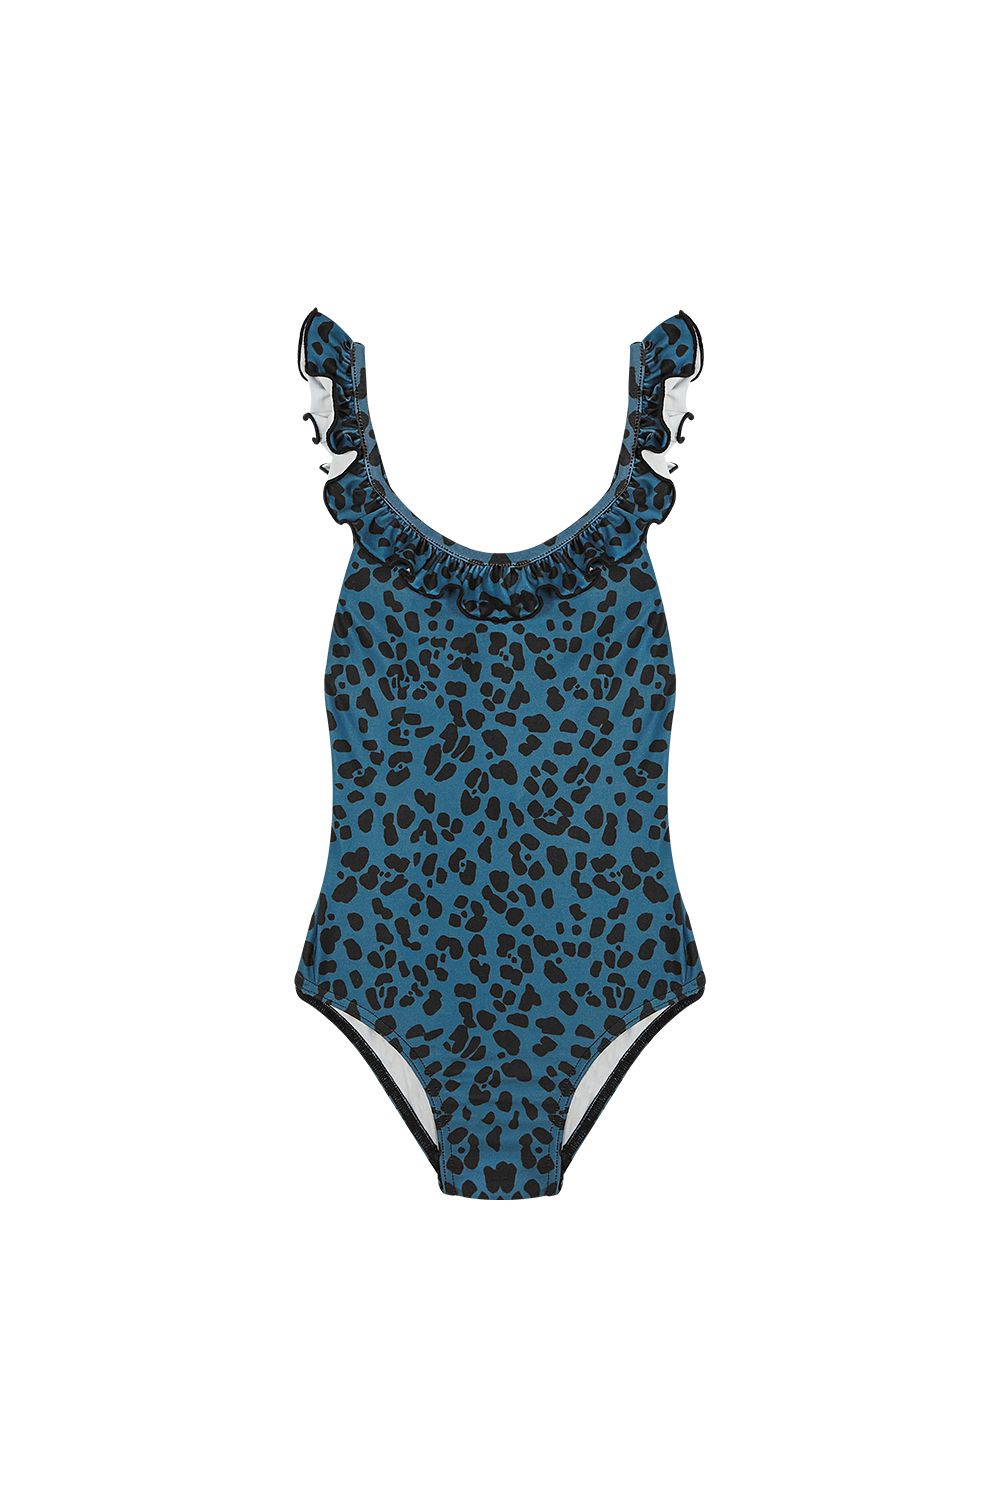 Teal Blue Baby Cerdeña Cross Ruffles Swimsuit